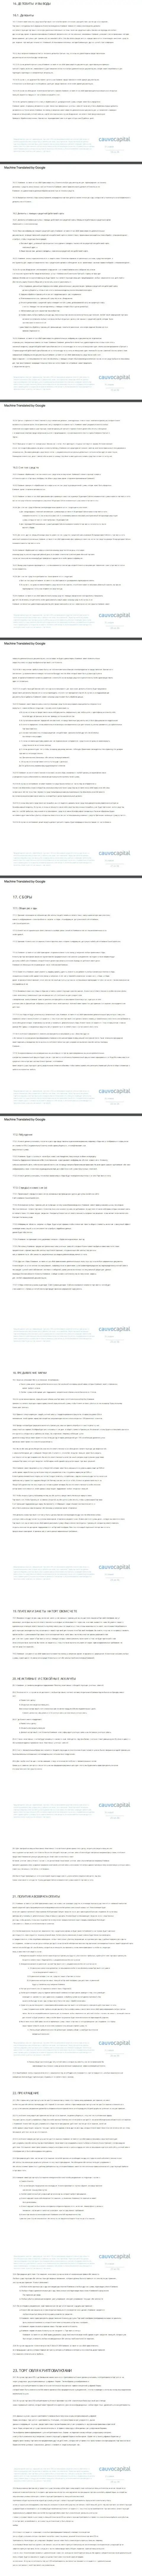 3 часть клиентского соглашения Форекс-организации CauvoCapital Com